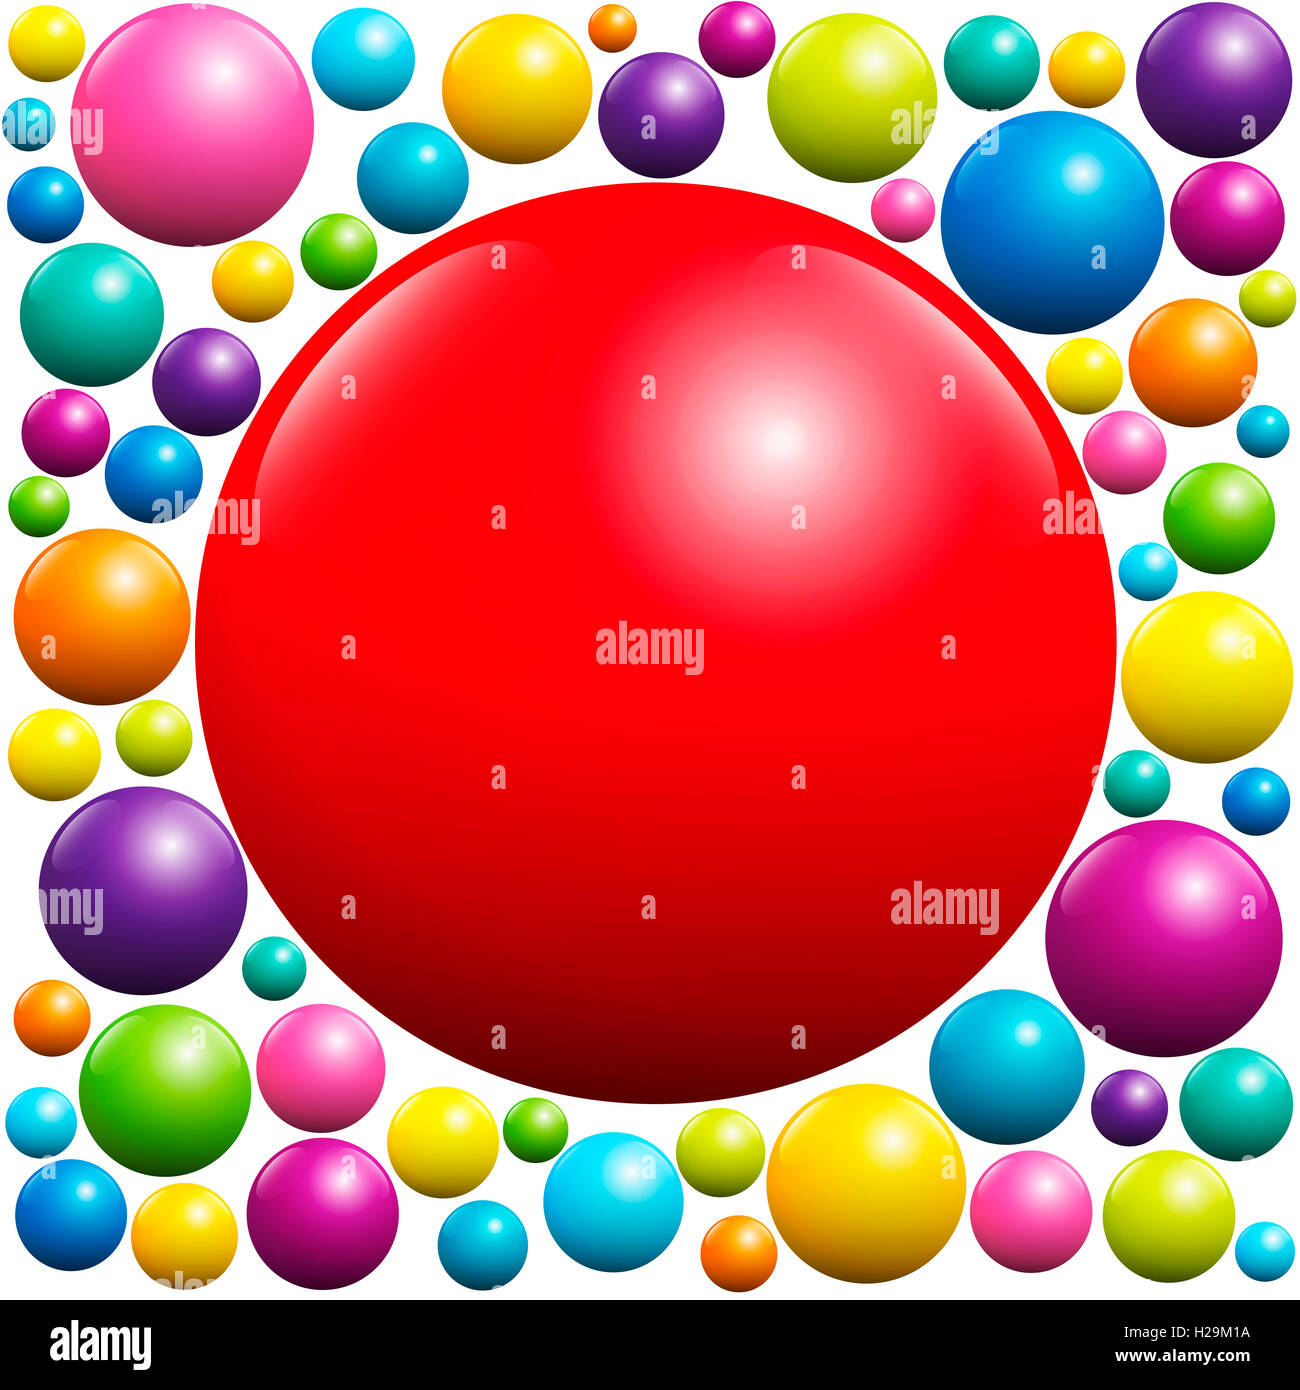 Bola roja rodeada por muchas bolas de colores - Ilustraci\u00f3n sobre fondo ...